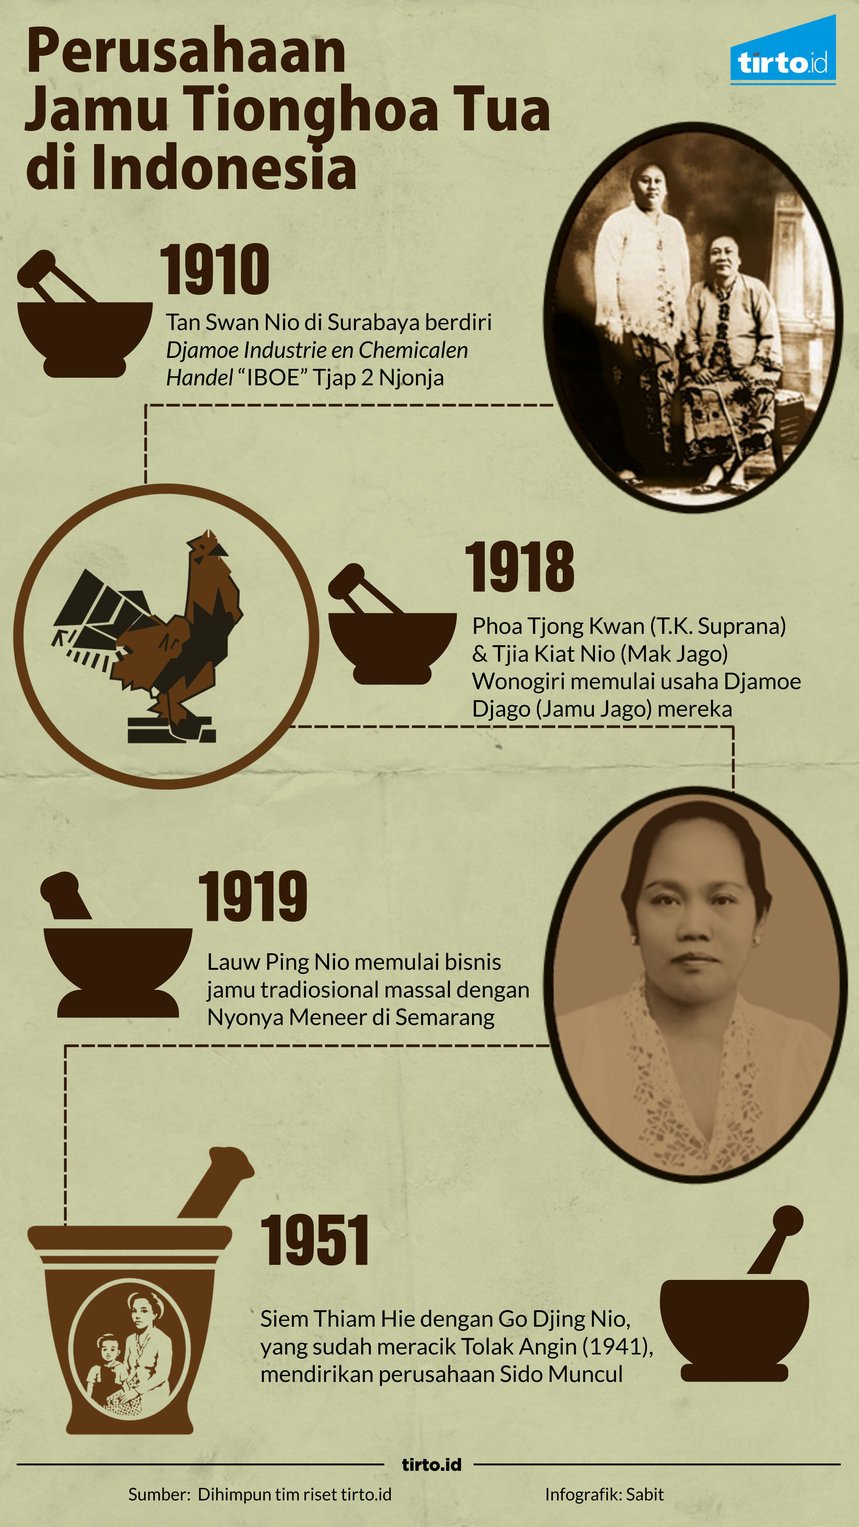 Infografik Perusahaan jamu tionghoa tua di indonesia